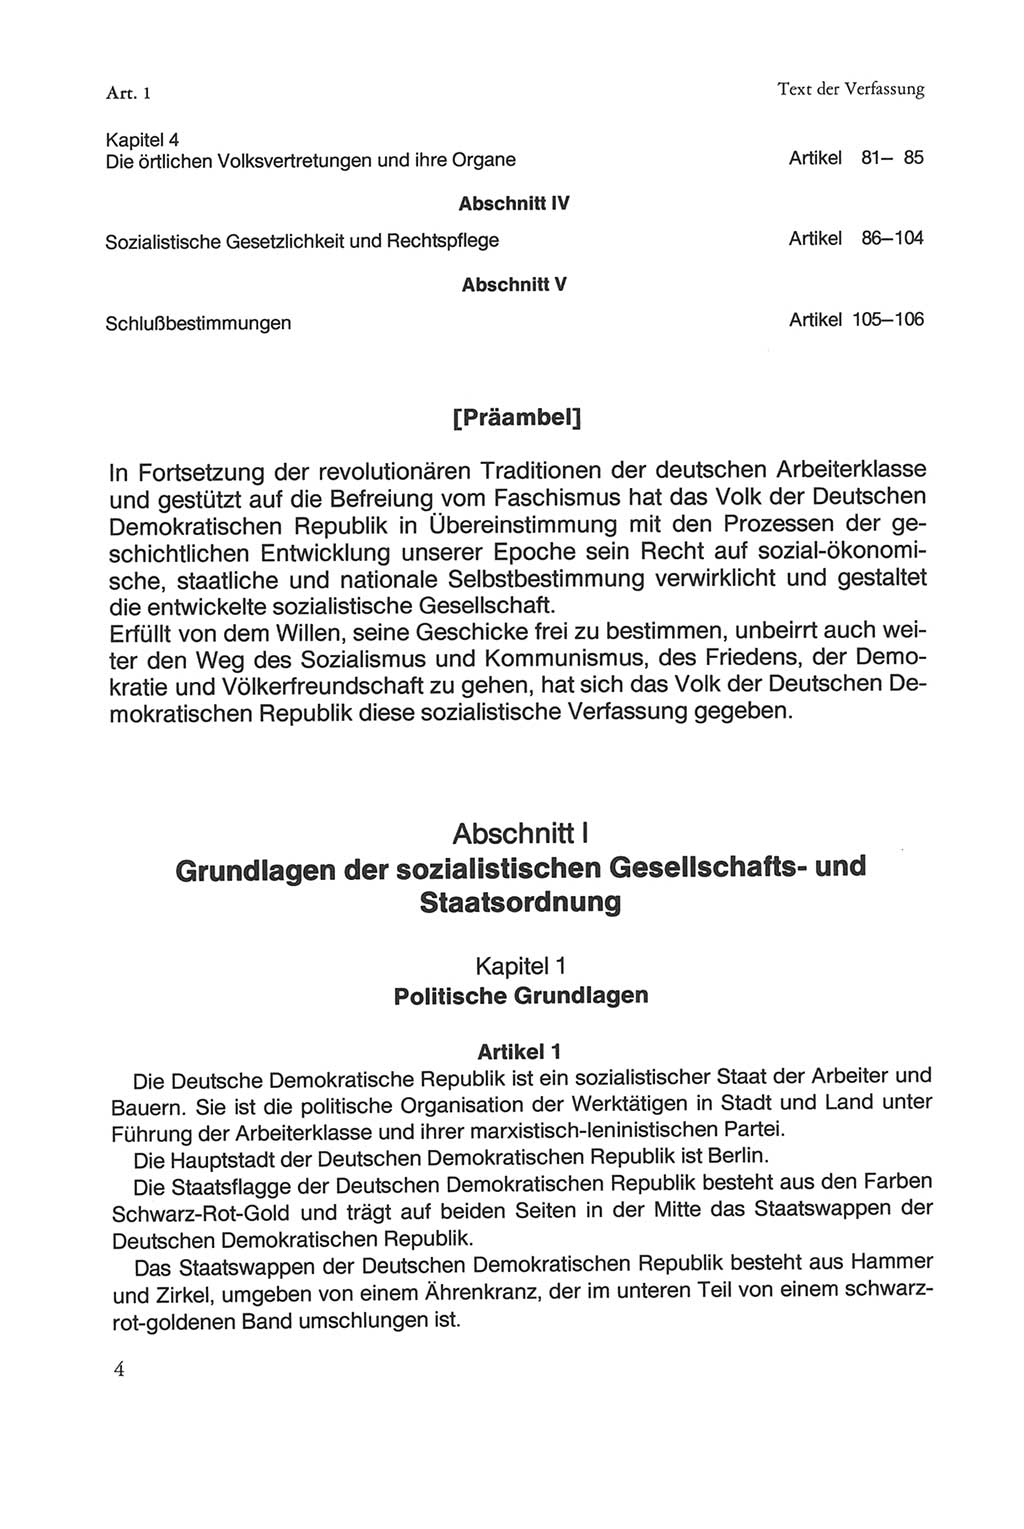 Die sozialistische Verfassung der Deutschen Demokratischen Republik (DDR), Kommentar 1982, Seite 4 (Soz. Verf. DDR Komm. 1982, S. 4)